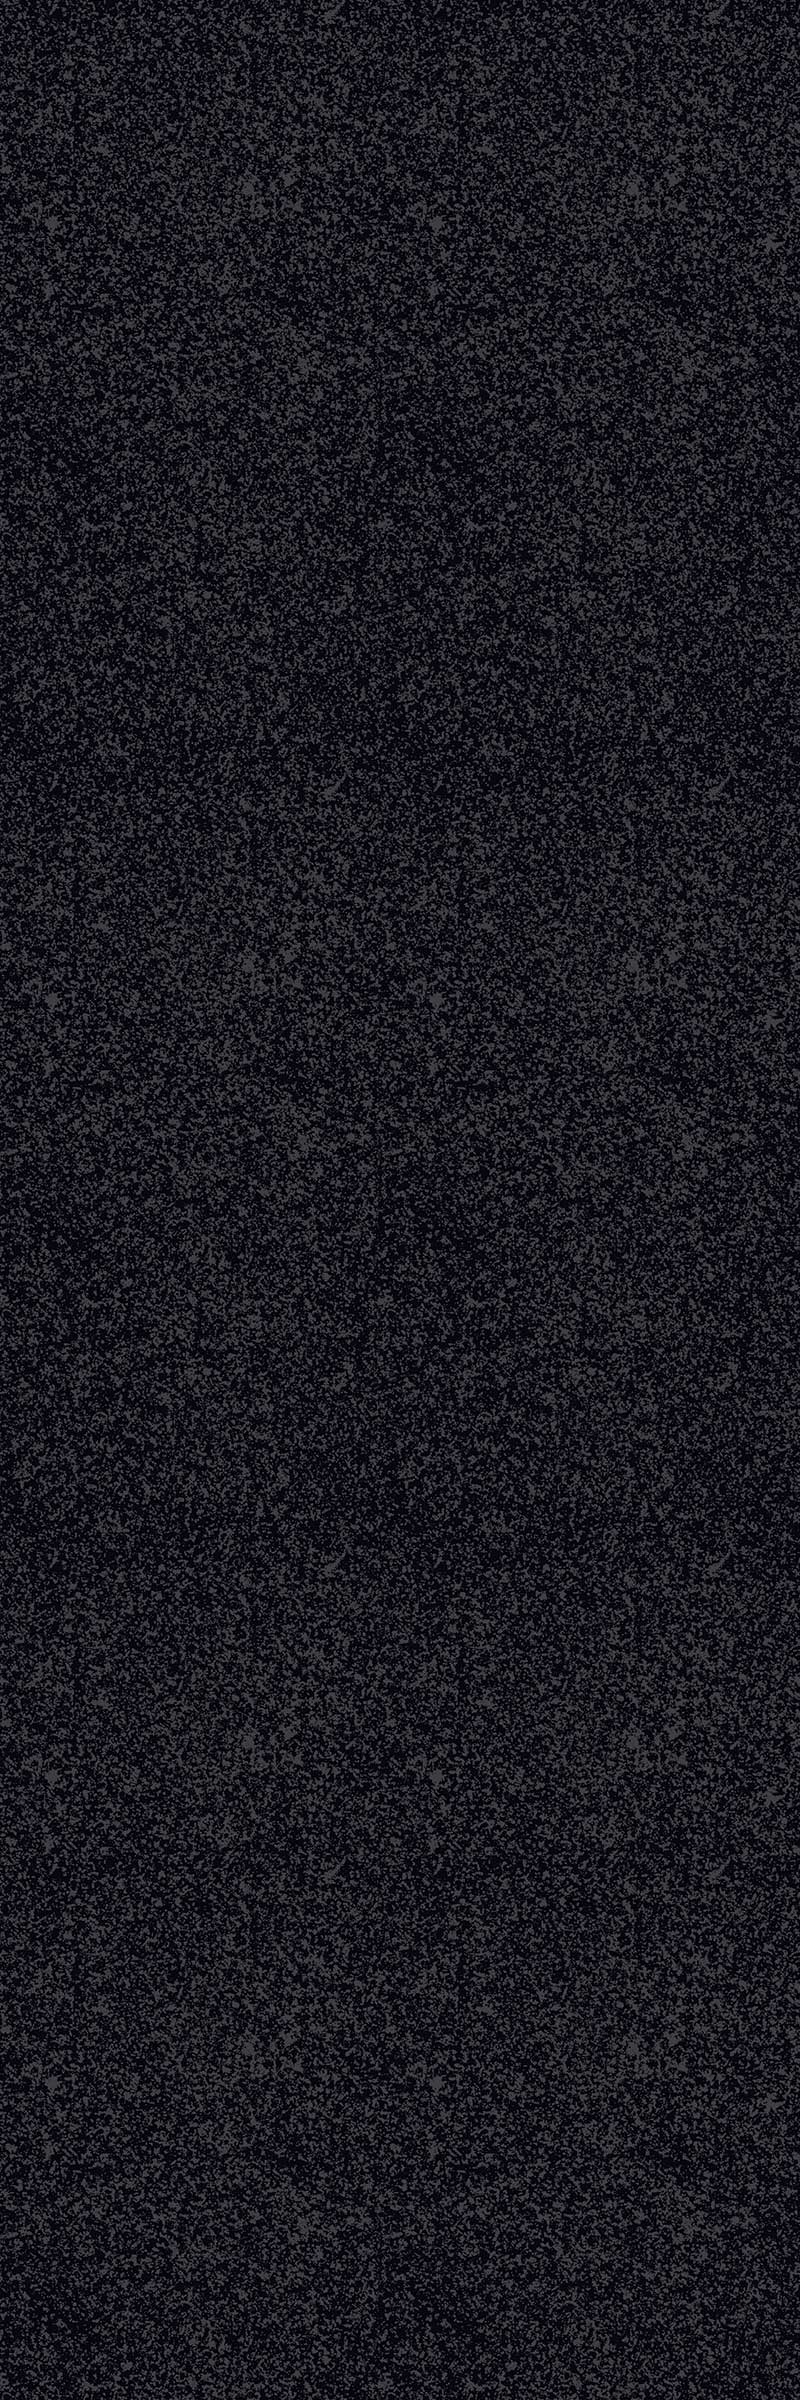 MAGNETIC-BLACK Tile